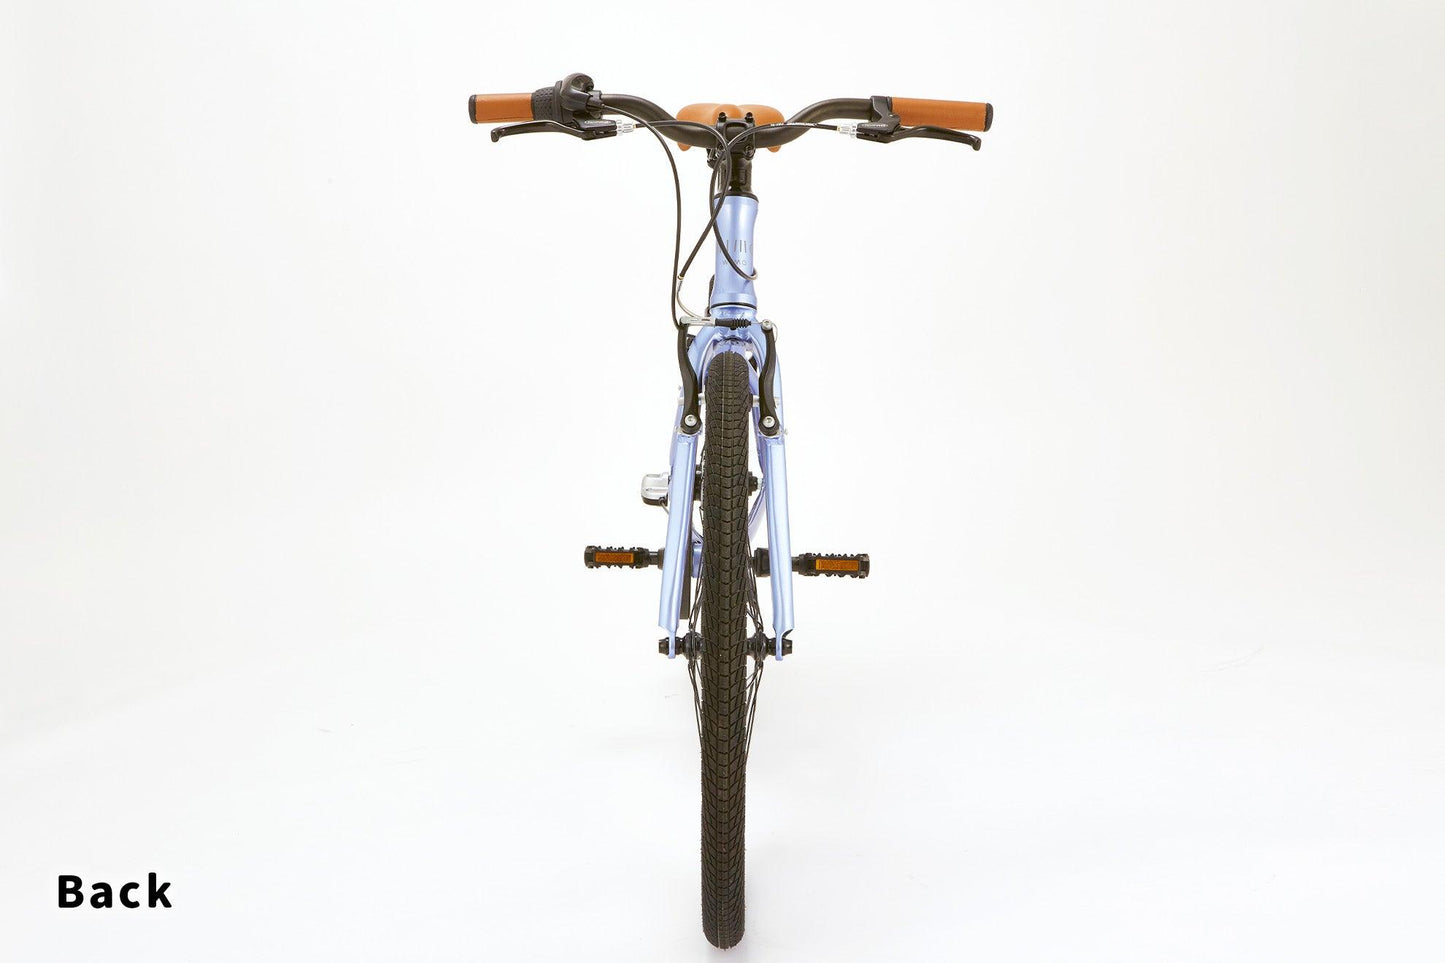 子供自転車 wimo kids 24 (Mugi / ムギ）| 8-10才 | 130-158cm | 9.45kg |内装3段変速 - wimo online store - オシャレ電動自転車 - 最軽量級子供自転車